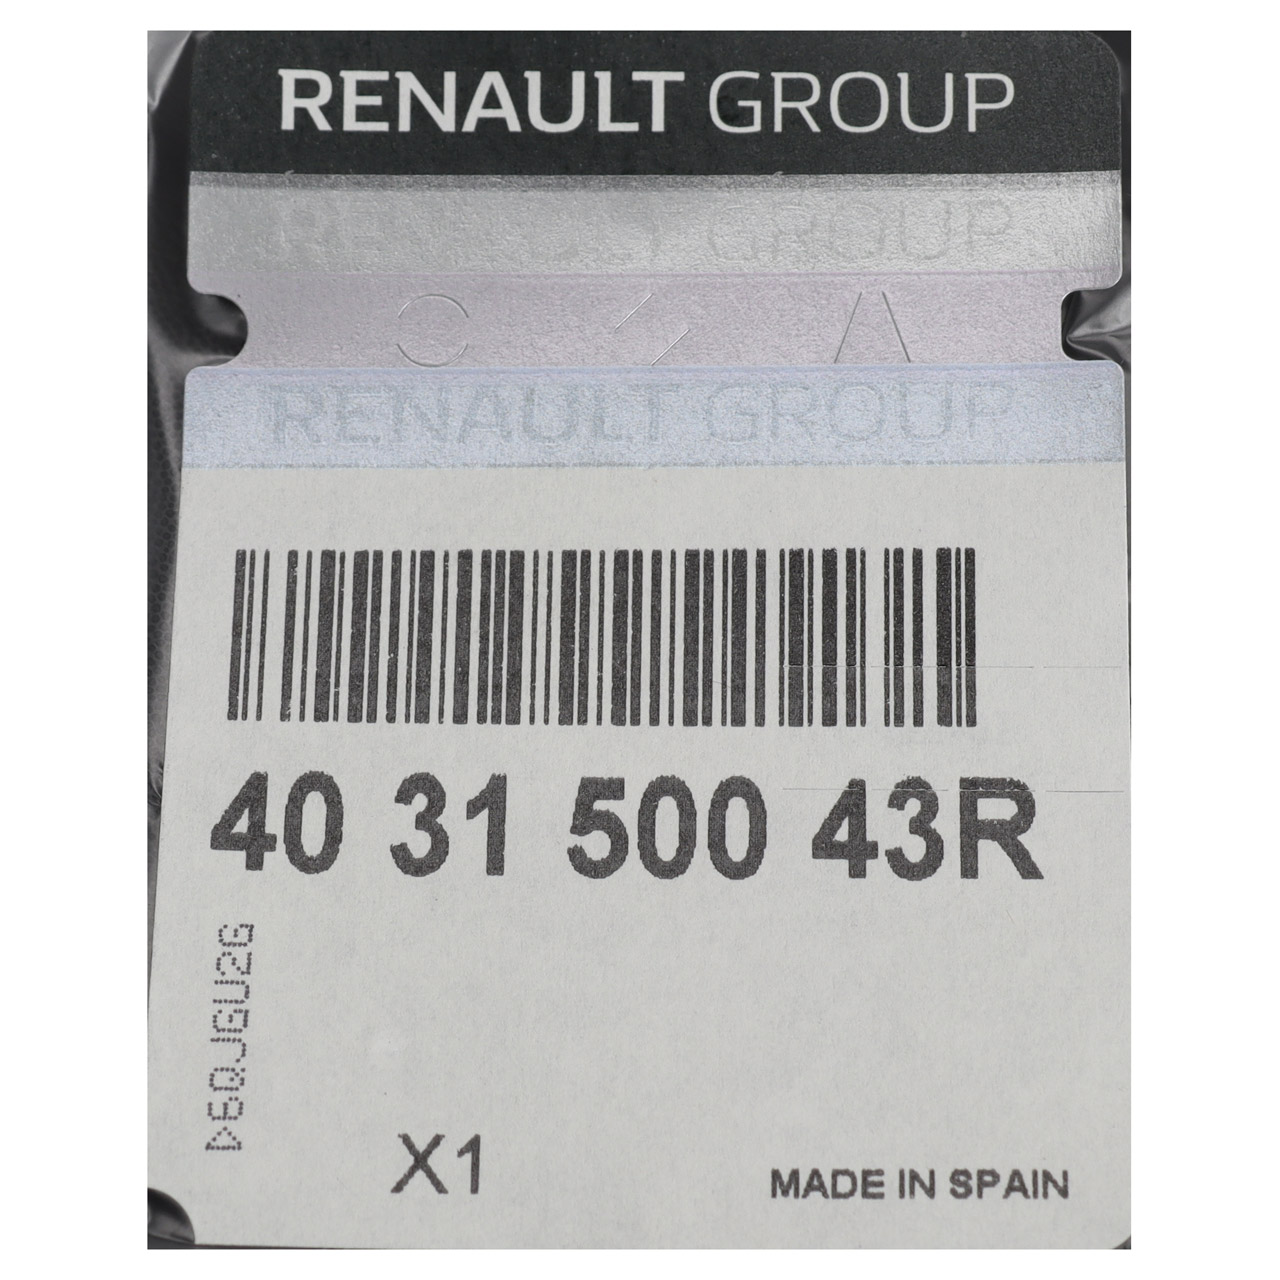 ORIGINAL Renault Radzierblende Radkappe 40,6cm 16 Zoll Master 3 403150043R